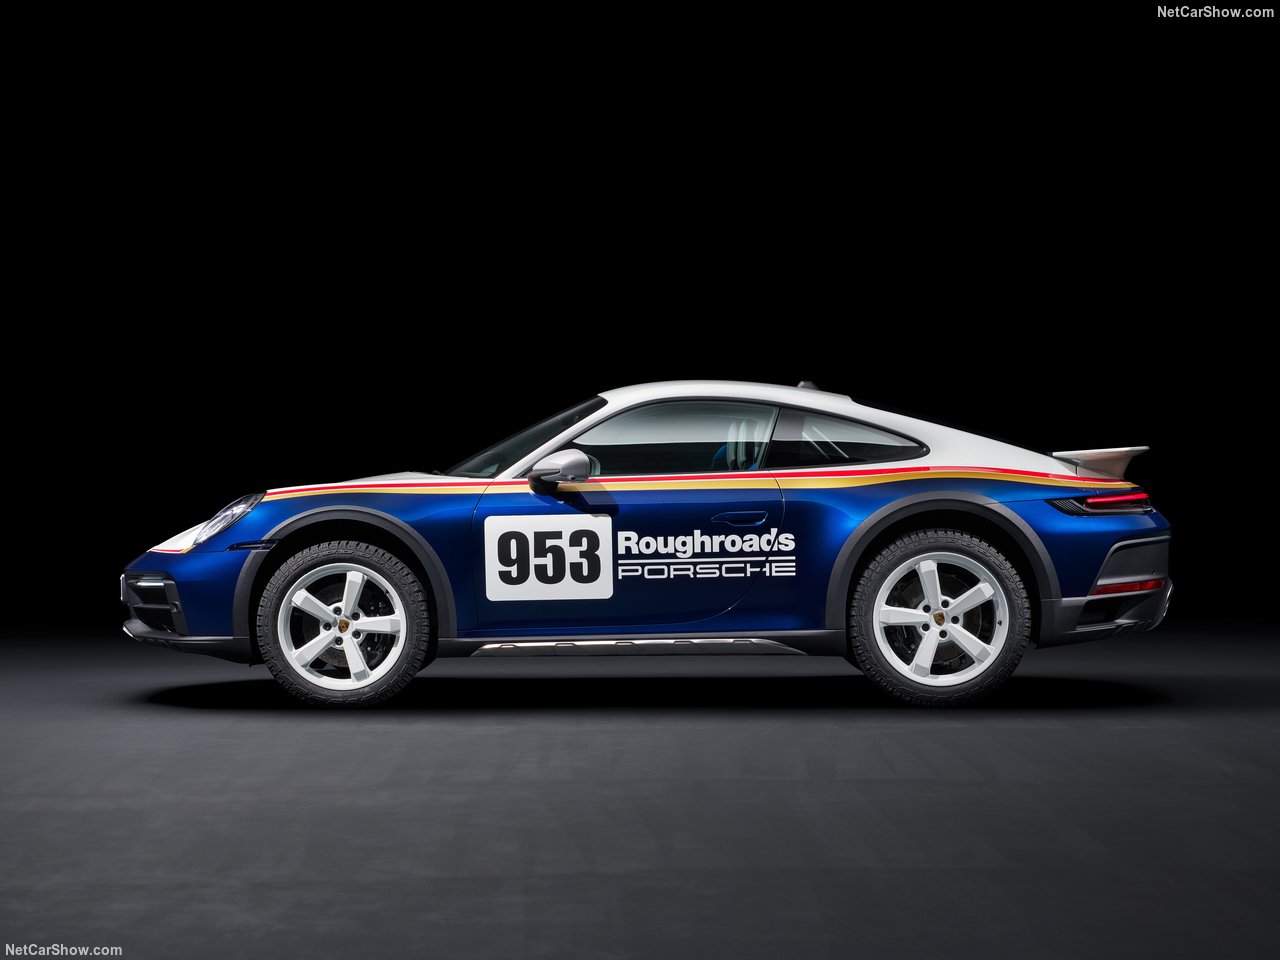 Источником энергии является тот же 3,0-литровый оппозитный шестицилиндровый двигатель с двойным турбонаддувом, который используется в 911 GTS. Он развивает 473 л.с. и 570 Нм крутящего момента, передавая мощность на все четыре колеса через восьмиступе